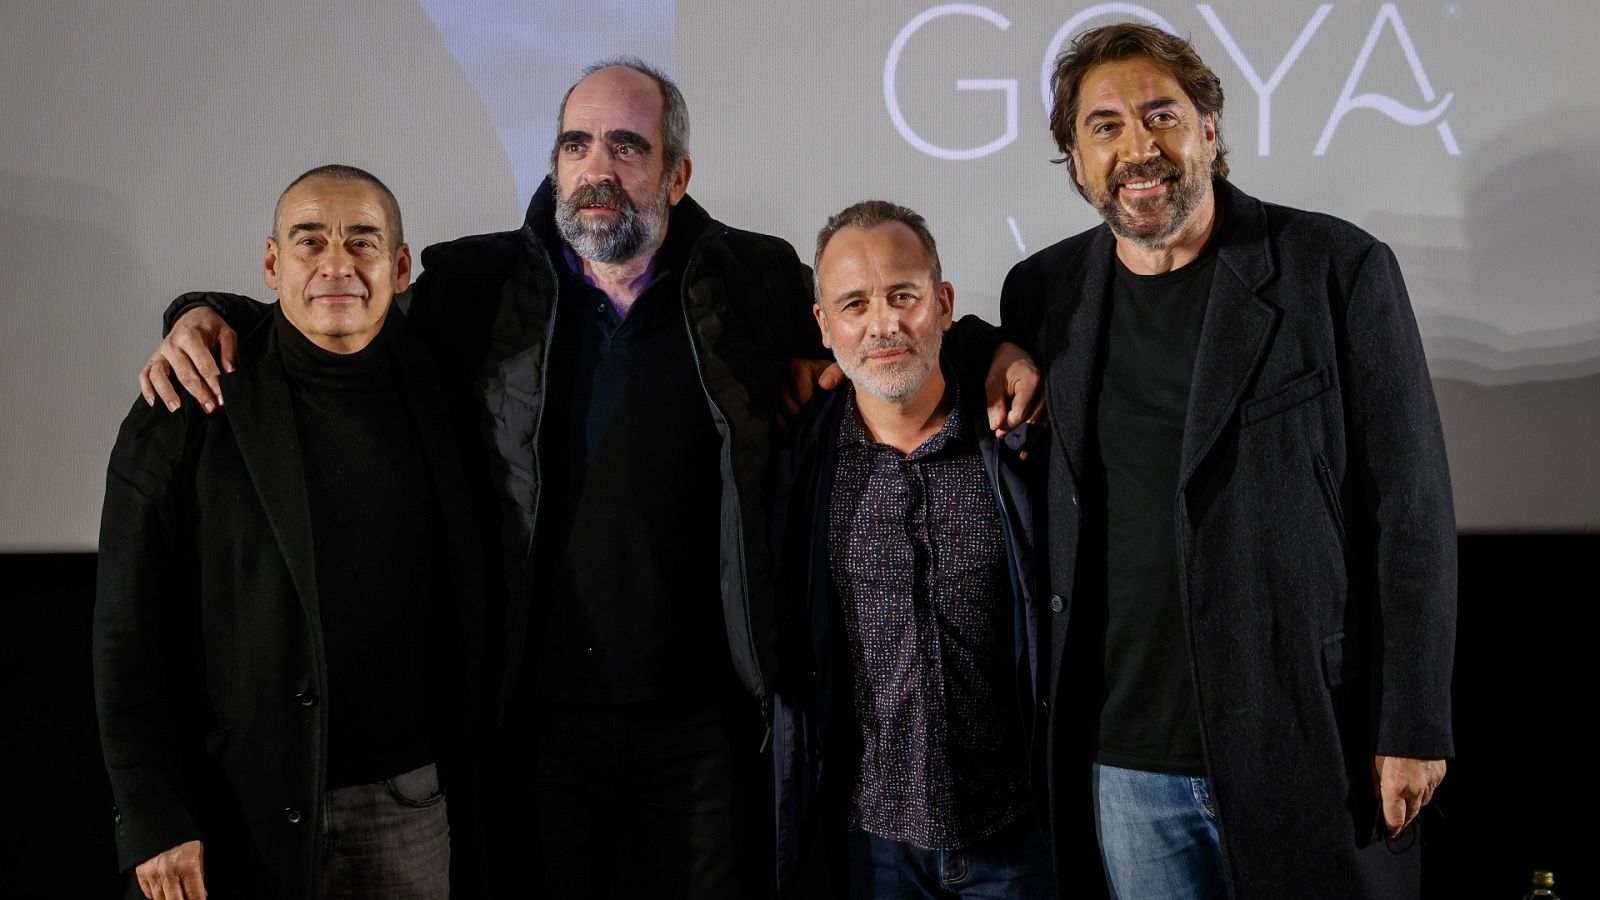 Los nominados al Goya a mejor actor protagonista reflexionan entre ellos sobre la importancia de la suerte, las inseguridades o la fragilidad